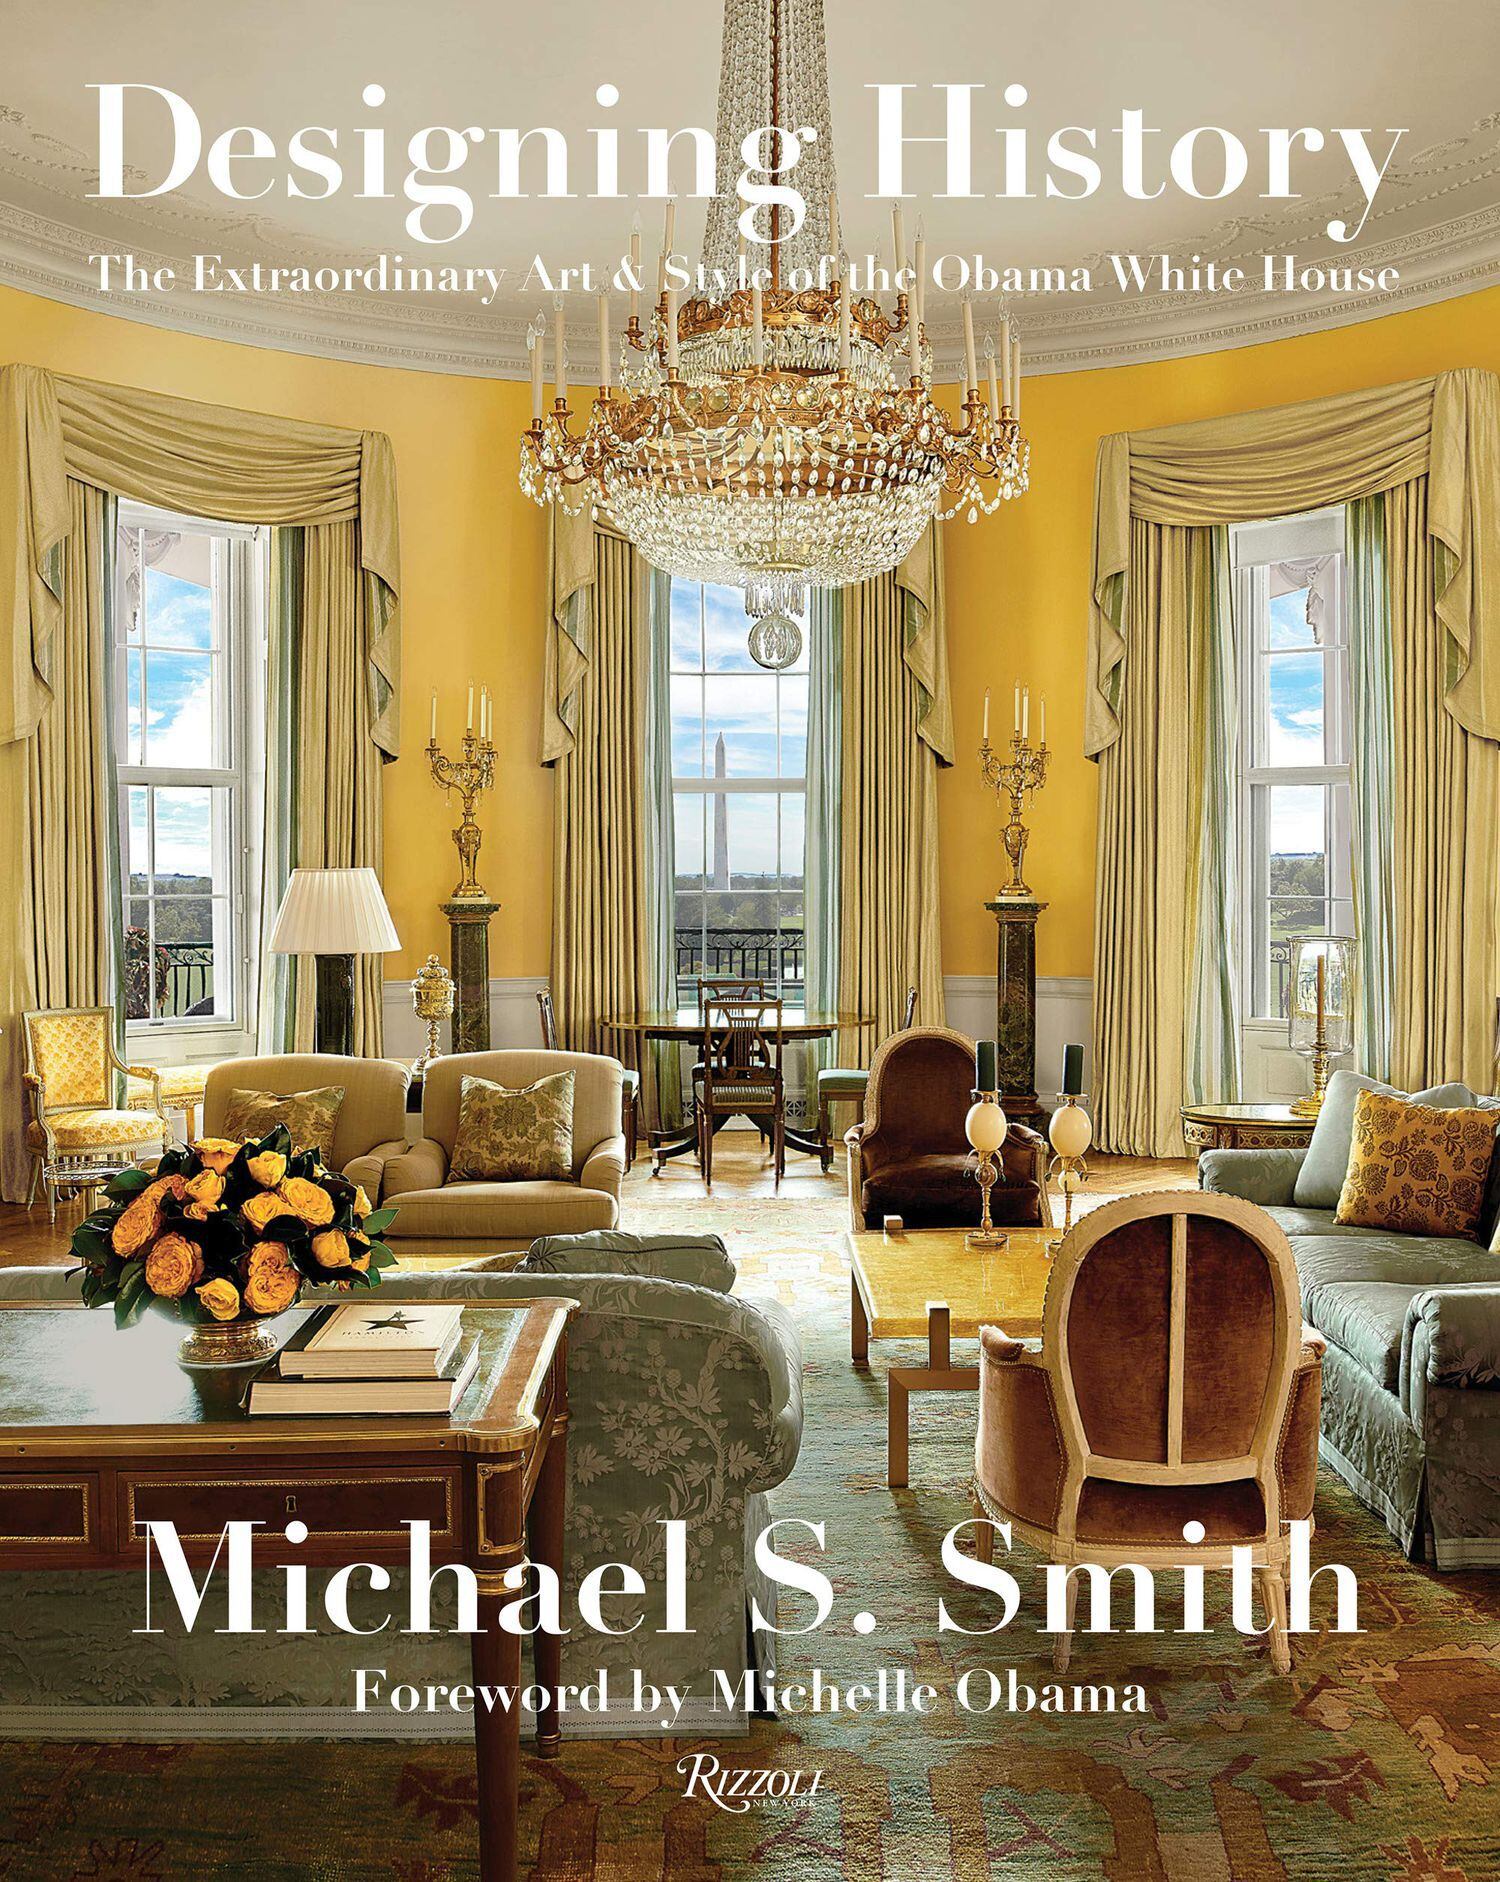 Capa do livro que Michael S. Smith publicou com a história decorativa da Casa Branca depois da renovação feita pelo casal Obama.